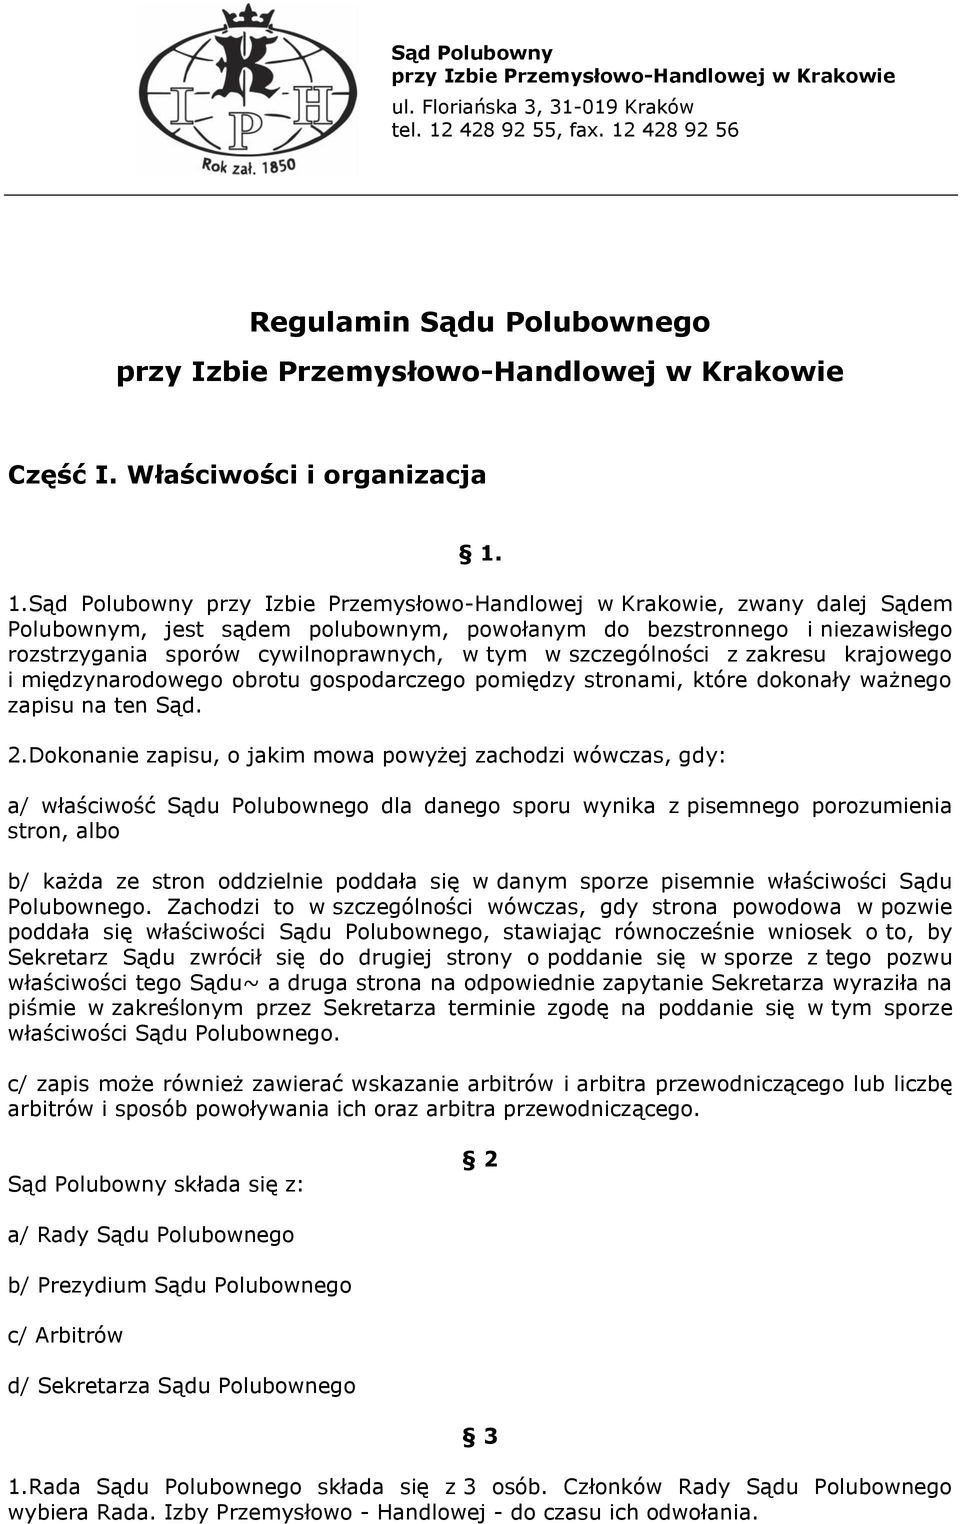 1.Sąd Polubowny przy Izbie Przemysłowo-Handlowej w Krakowie, zwany dalej Sądem Polubownym, jest sądem polubownym, powołanym do bezstronnego i niezawisłego rozstrzygania sporów cywilnoprawnych, w tym